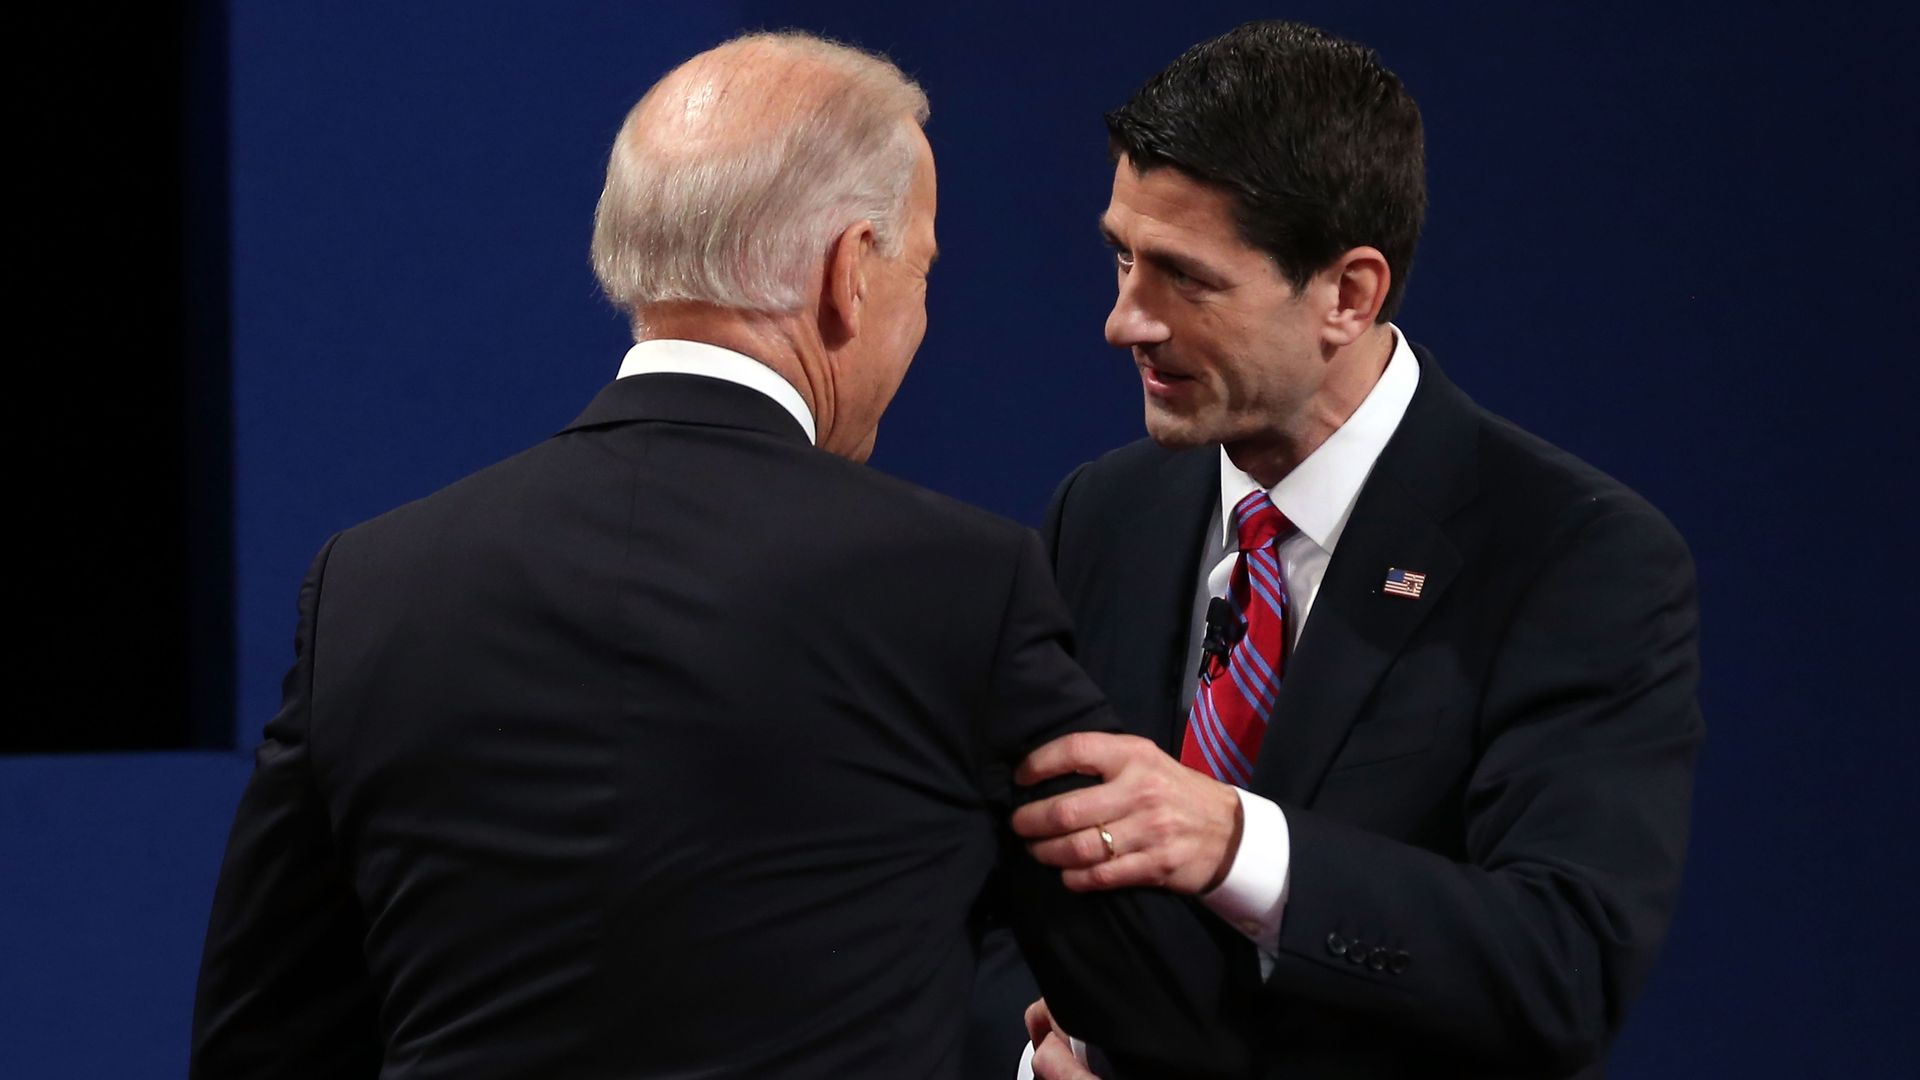 Paul Ryan shakes hands with Joe Biden.